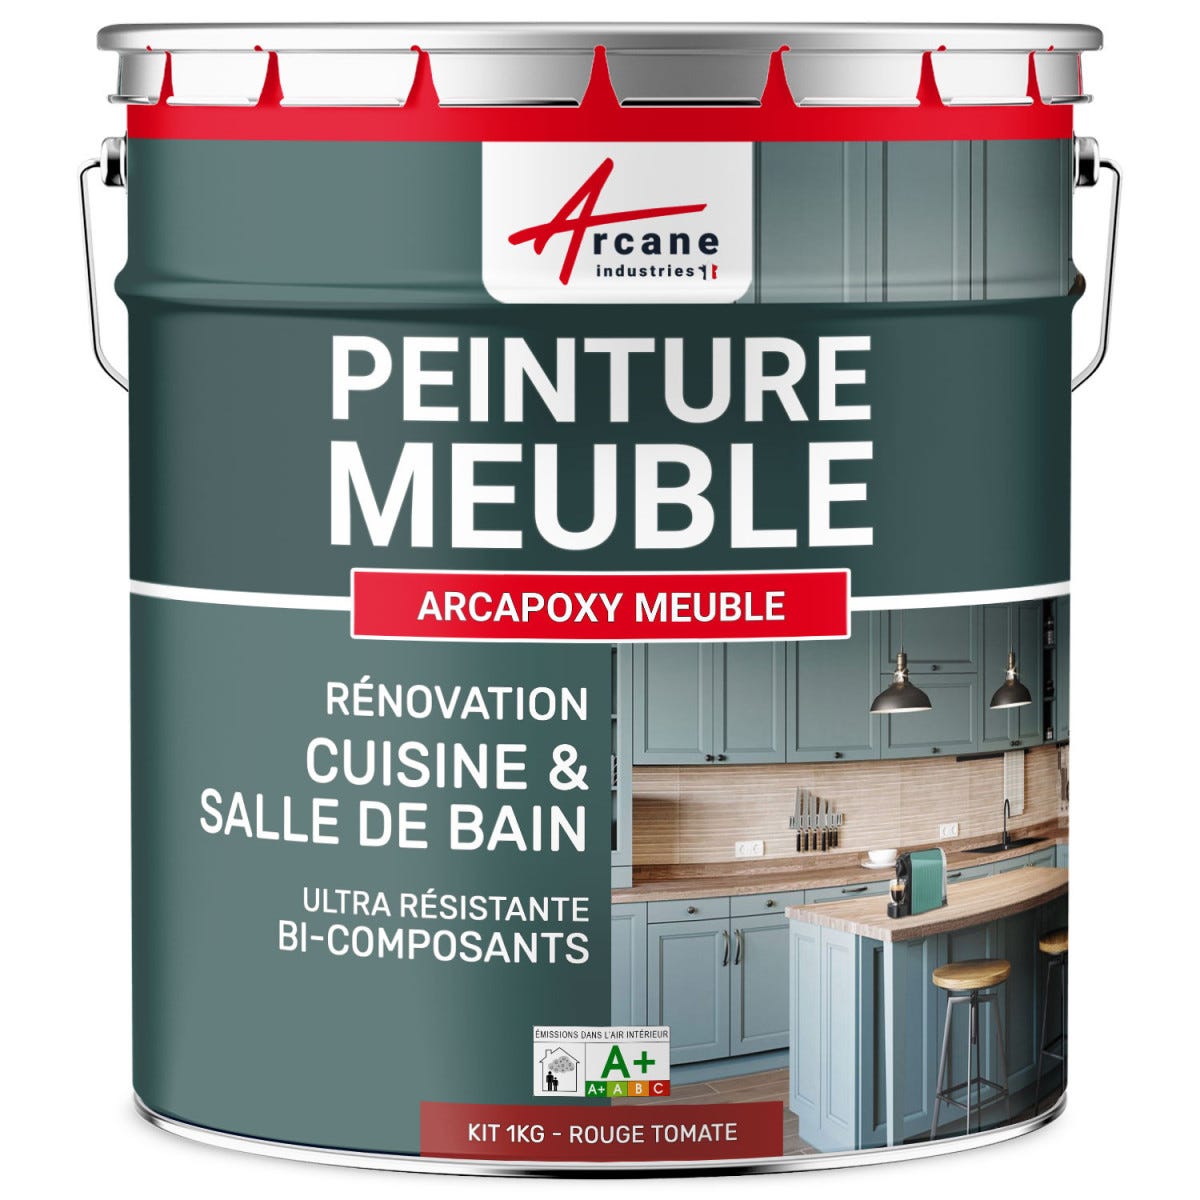 Peinture Meuble Cuisine, Salle de Bain - ARCAPOXY MEUBLE - 1 kg (jusqu'à 12 m² en 2 couches) - Rouge Tomate - RAL 3013 - ARCANE INDUSTRIES 5